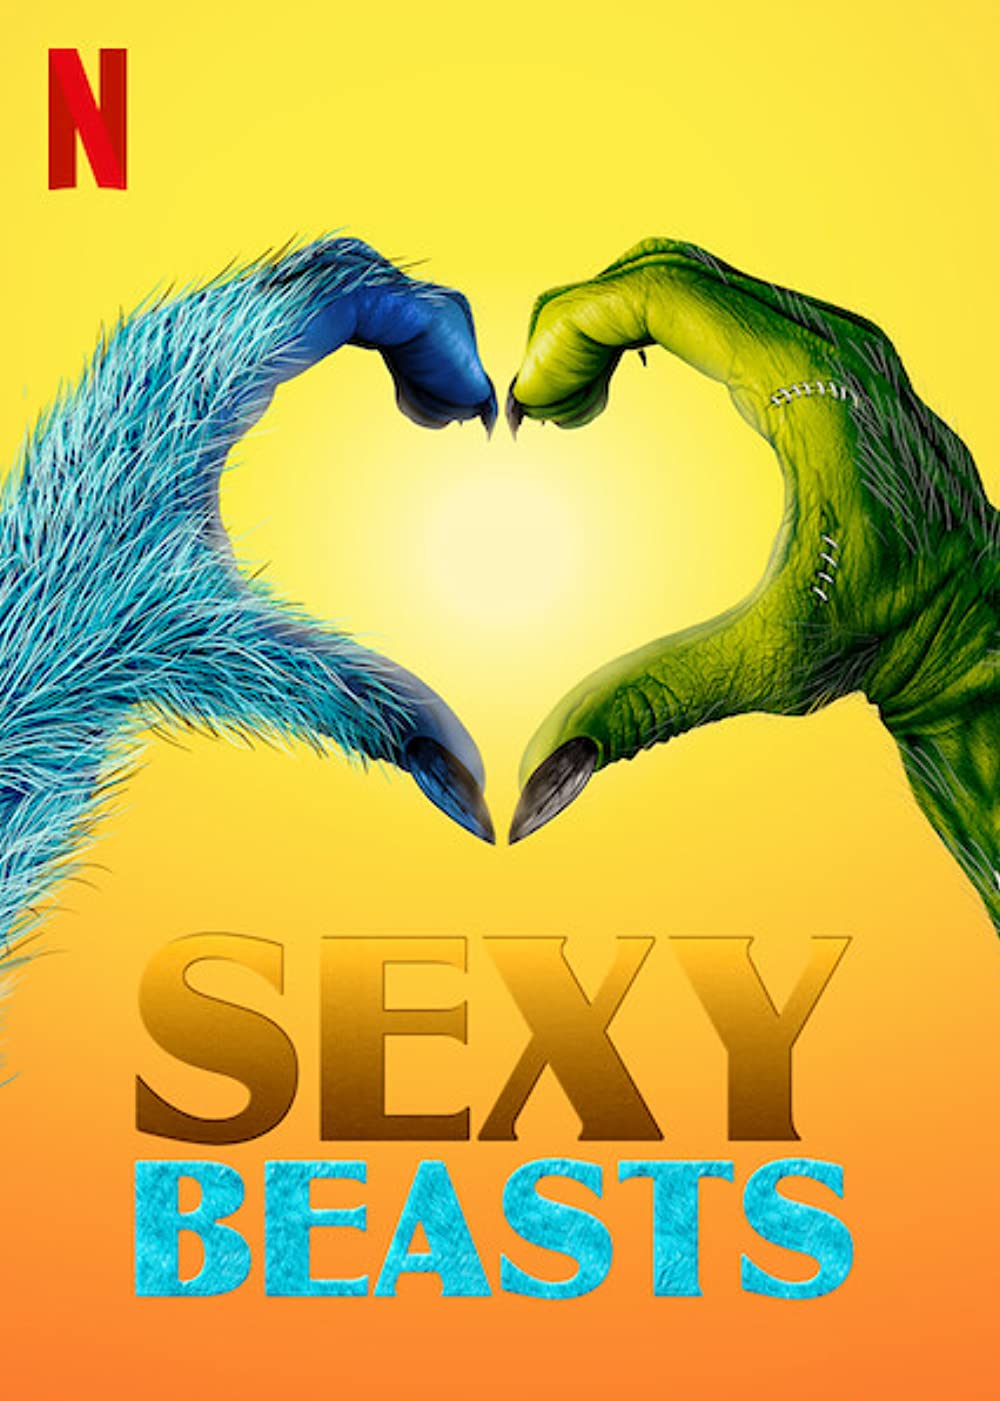 ดูซีรี่ย์ออนไลน์ ซีรี่ย์ฝรั่ง Sexy Beast (2021) เซ็กซี่ บีสต์ HD ซับไทย